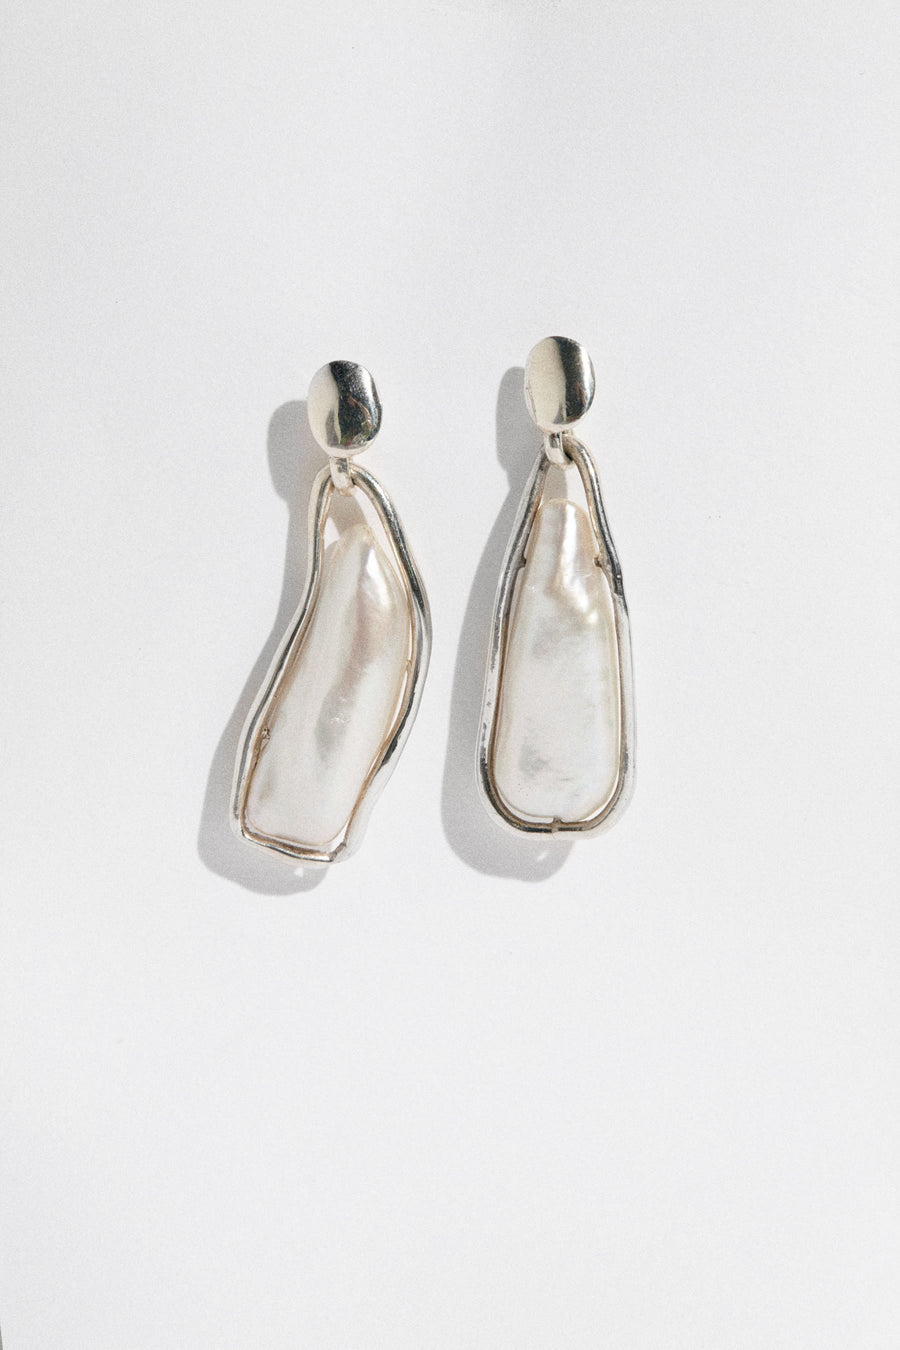 Hernan Herdez- Jewellery-jewelry-Jeryco Store- London- Earrings-pearls-sterling silver-wedding earrings- pearl drop earrings- biwa pearls- Caged Pearl Earrings